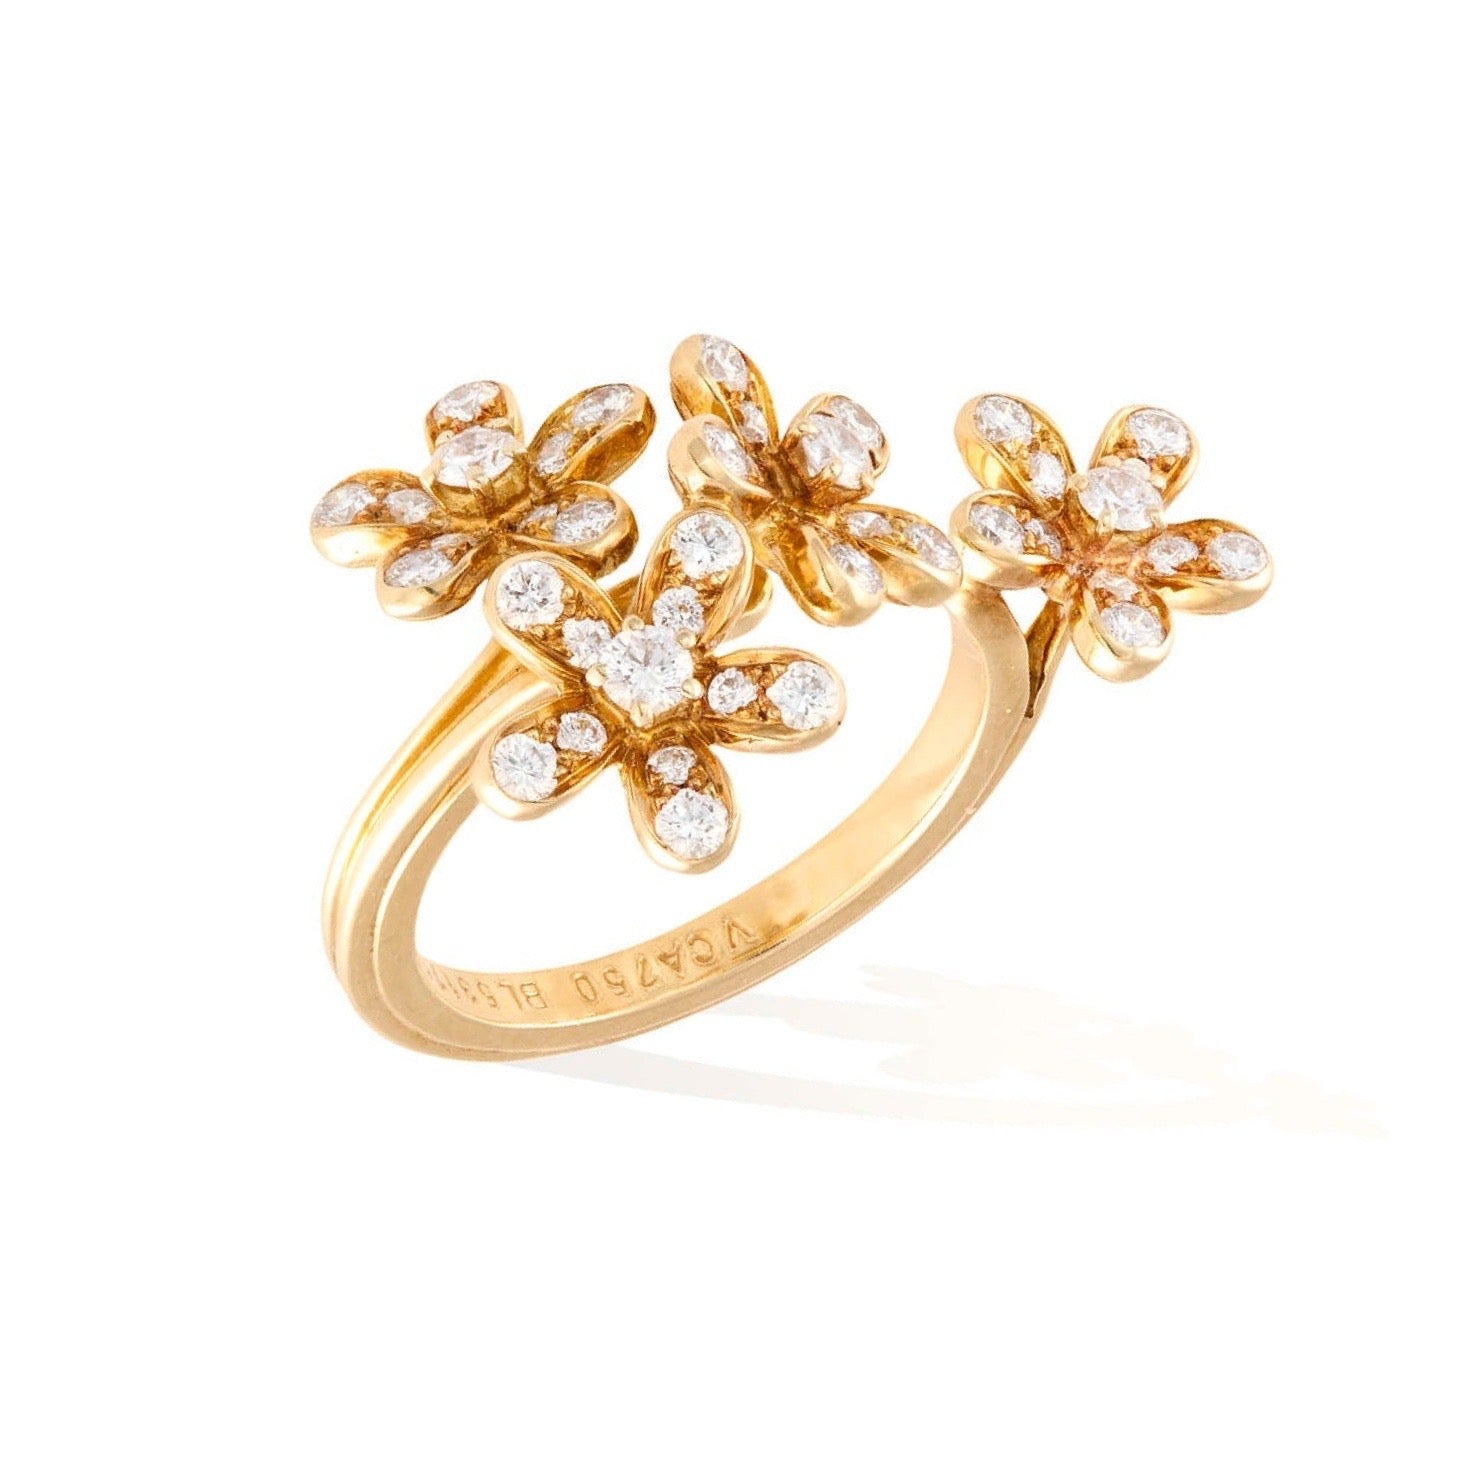 Socrate Between the fingers Van Cleef & Arpels Diamonds 18 carats yellow Gold Ring